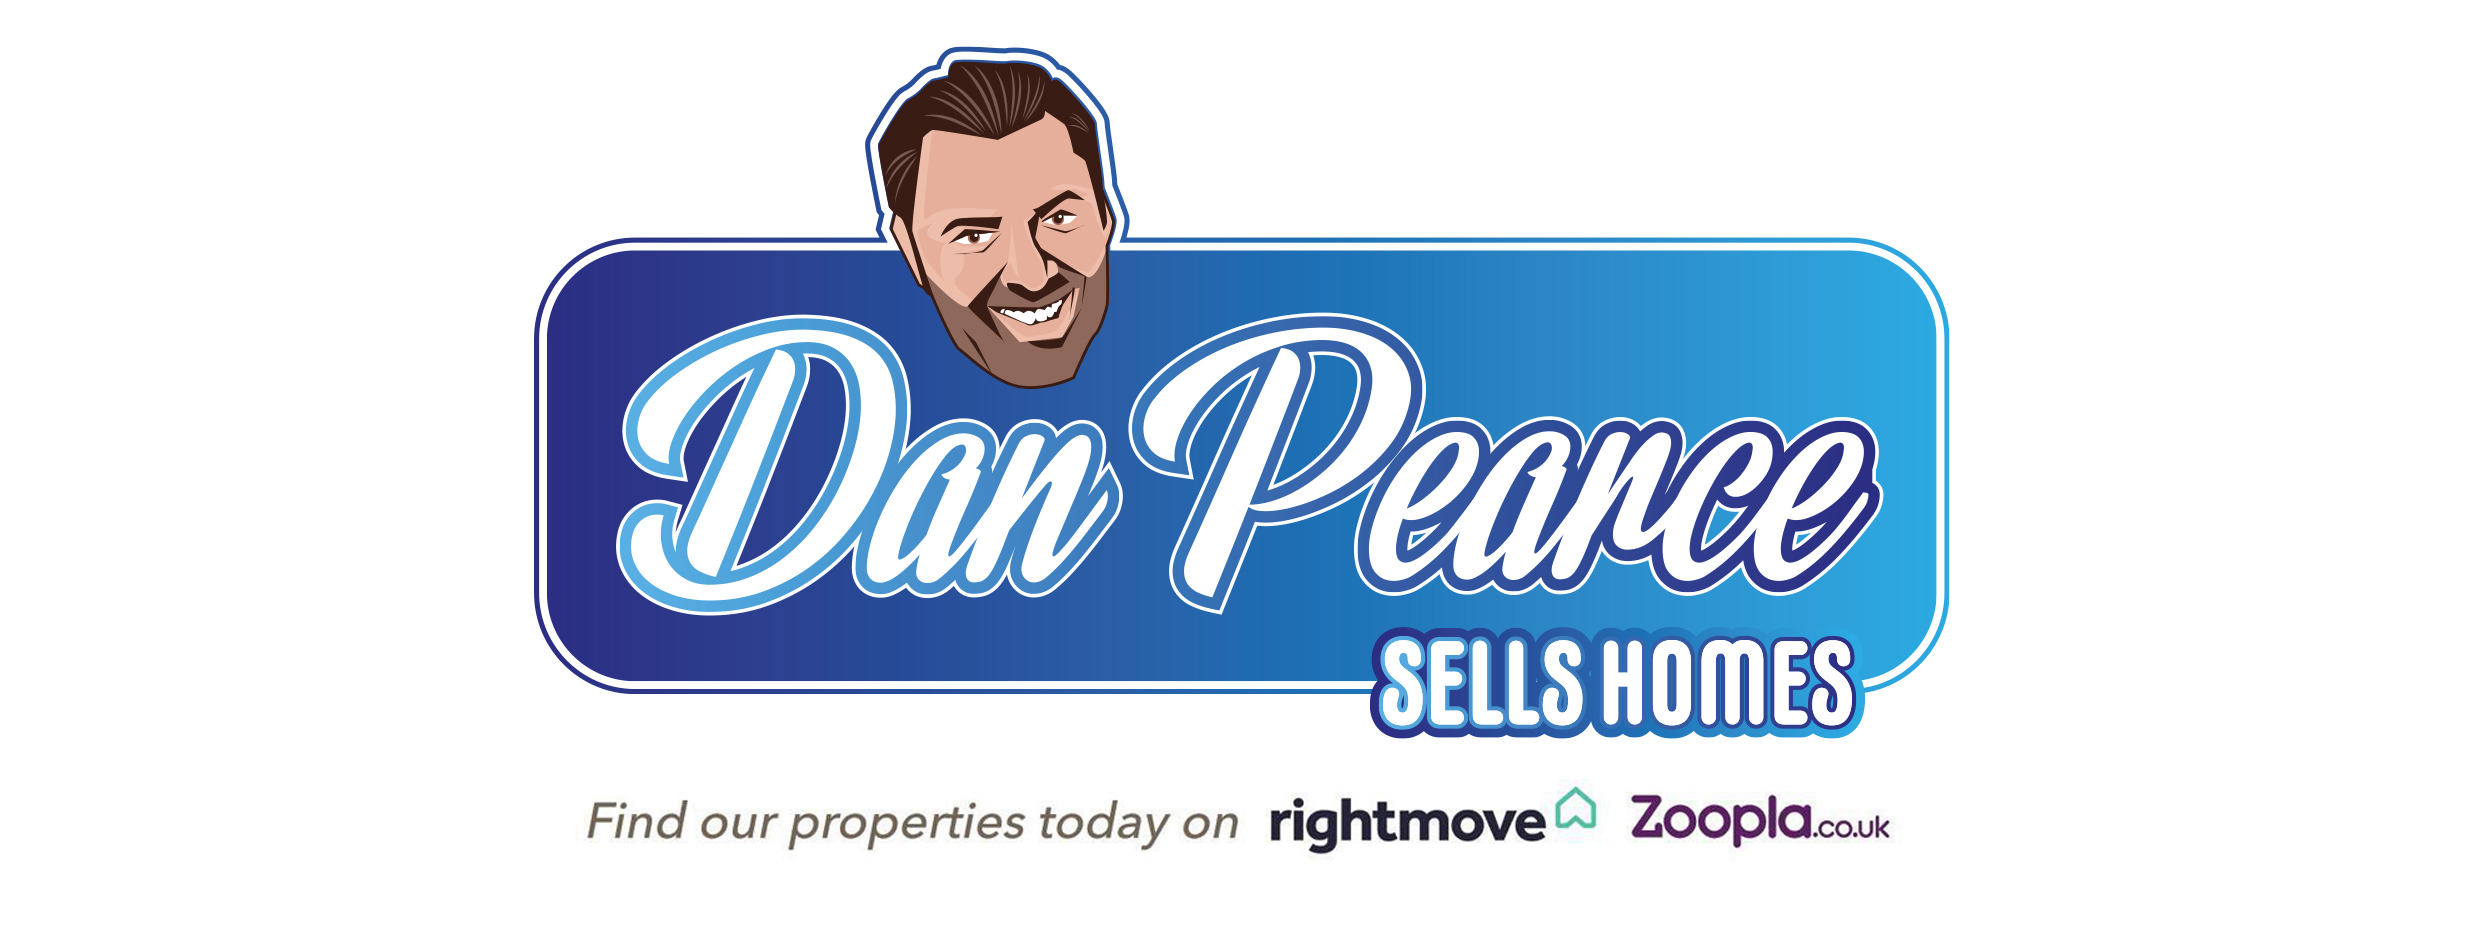 Dan Pearce Sells Homes estate agent Pudsey Bramley Wortley Leeds